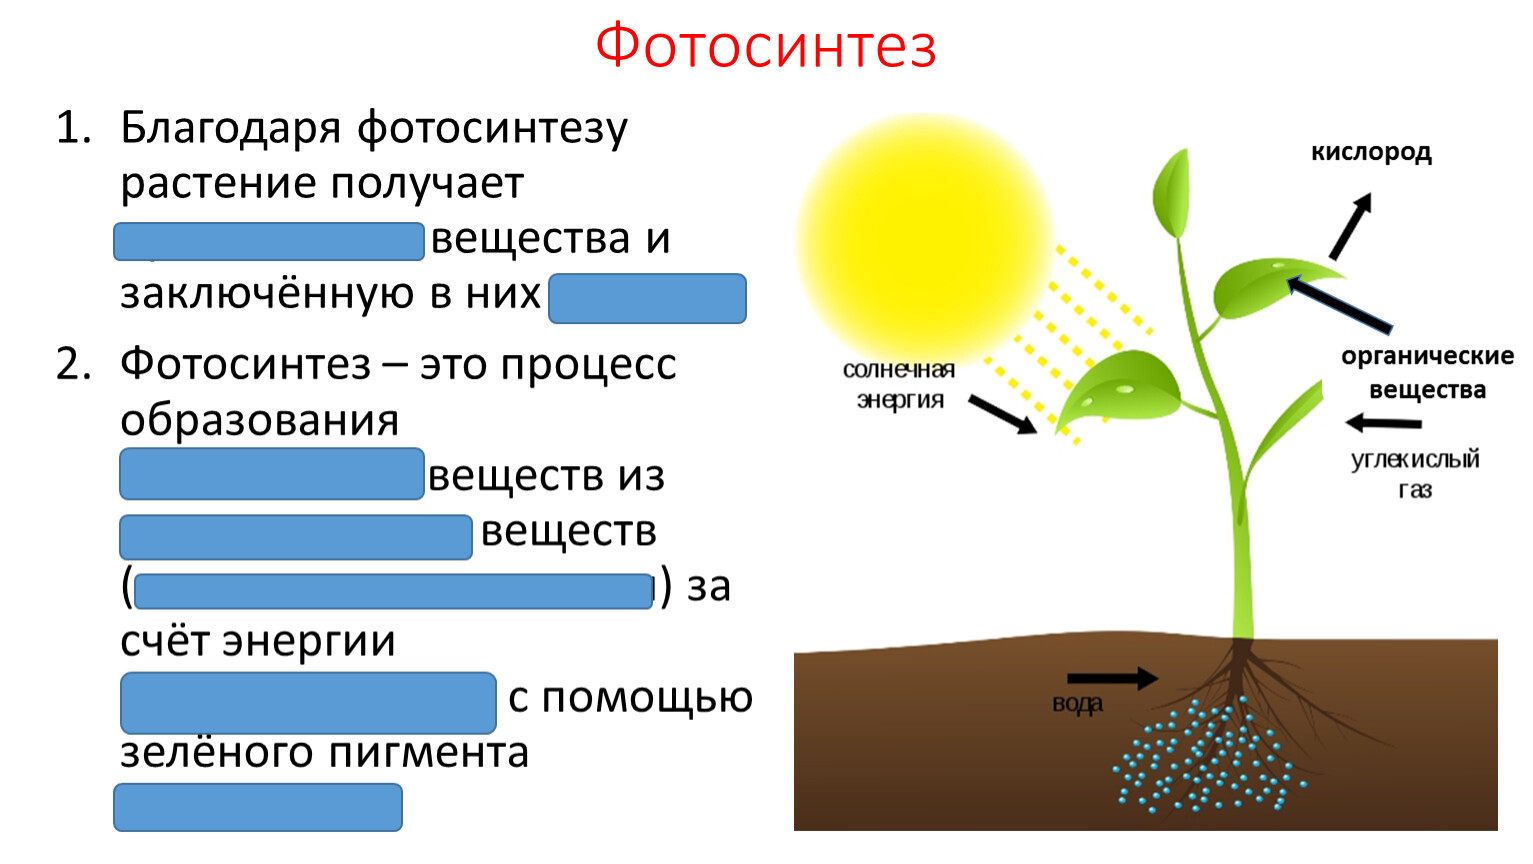 Задания по теме фотосинтез 6 класс. Фотосинтез класс 6 класс. Фотосинтез 5-6 класс. Фотосинтез органические вещества. Солнечная энергия фотосинтез.